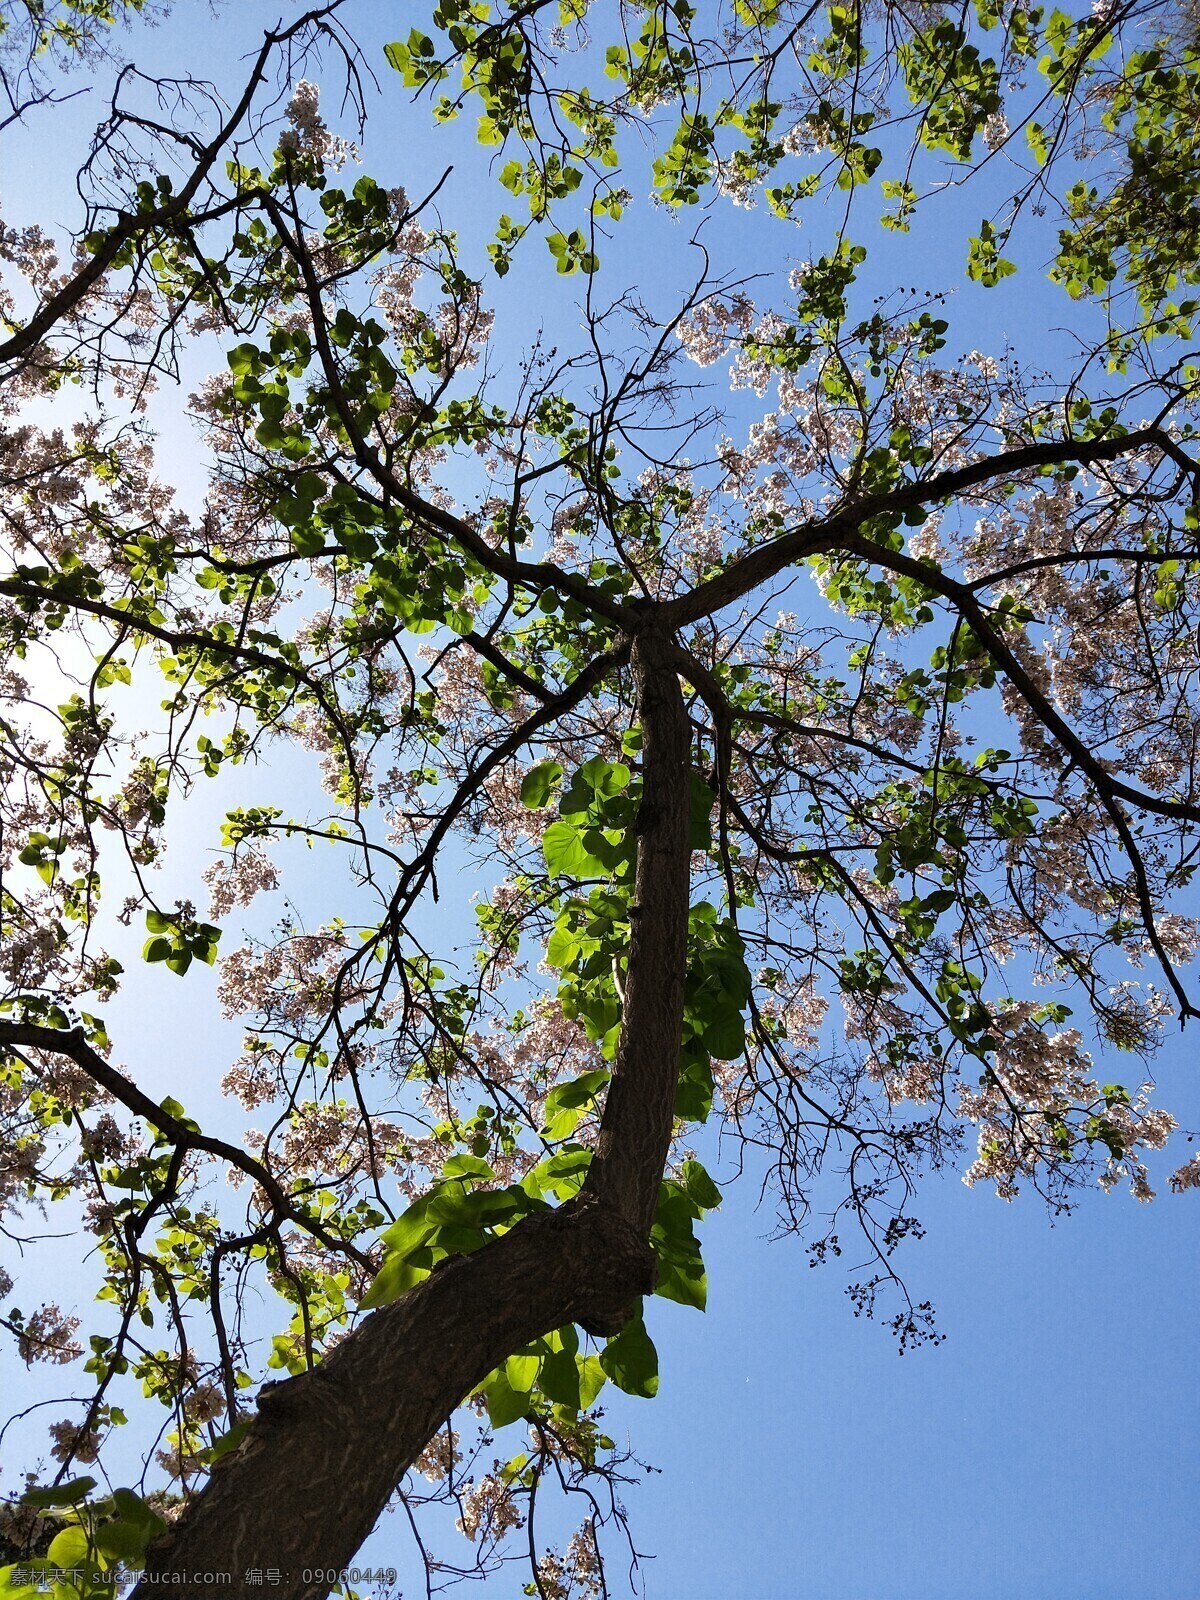 仰望泡桐树 蓝蓝的天 阳光明媚 仰望 十几年老树 泡桐树 淡紫色花 翠绿的叶子 春天 生机 生物世界 树木树叶